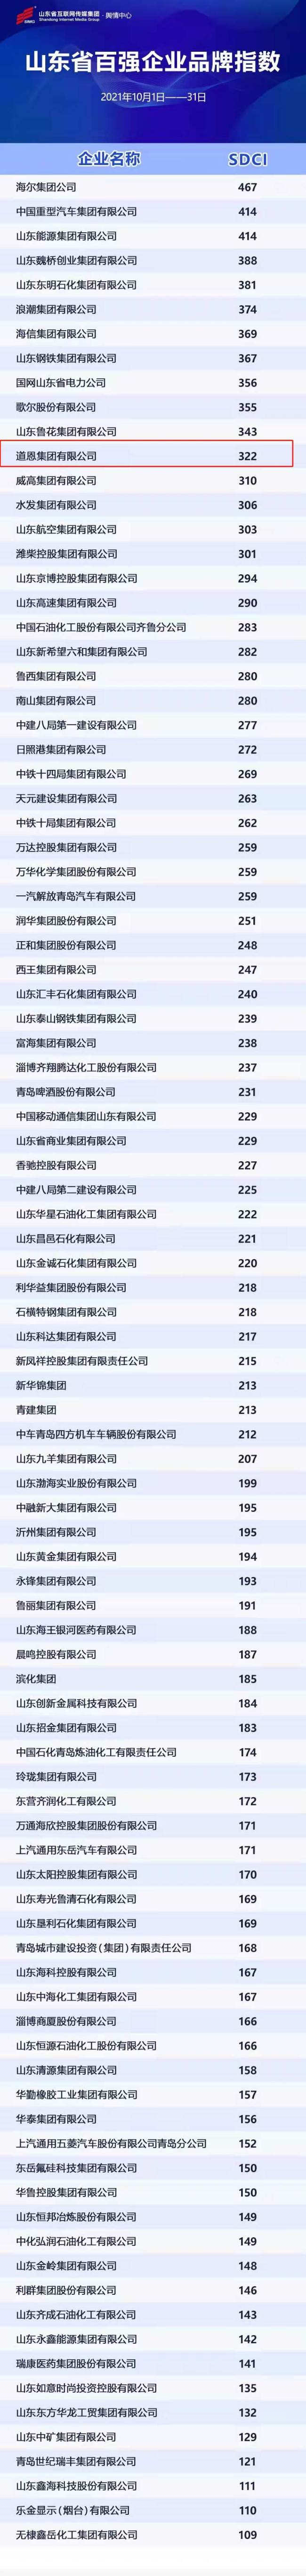 山东省百强企业9月份品牌指数发布，道恩集团连跃10级升至第12位